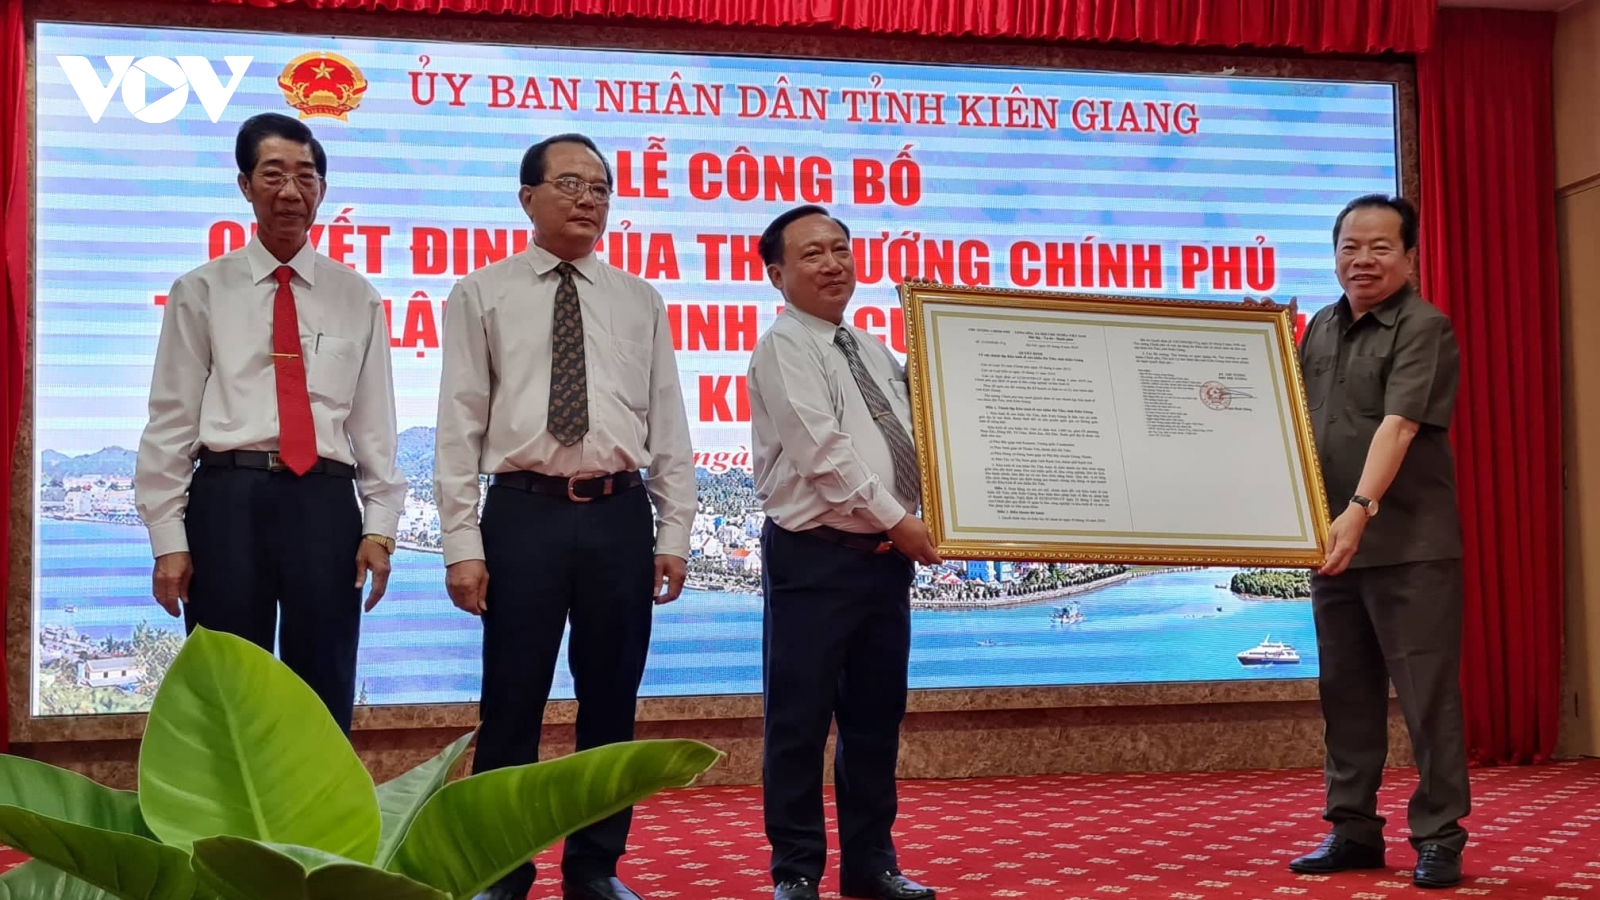 Công bố quyết định của Thủ tướng Chính phủ thành lập Khu kinh tế cửa khẩu Hà Tiên